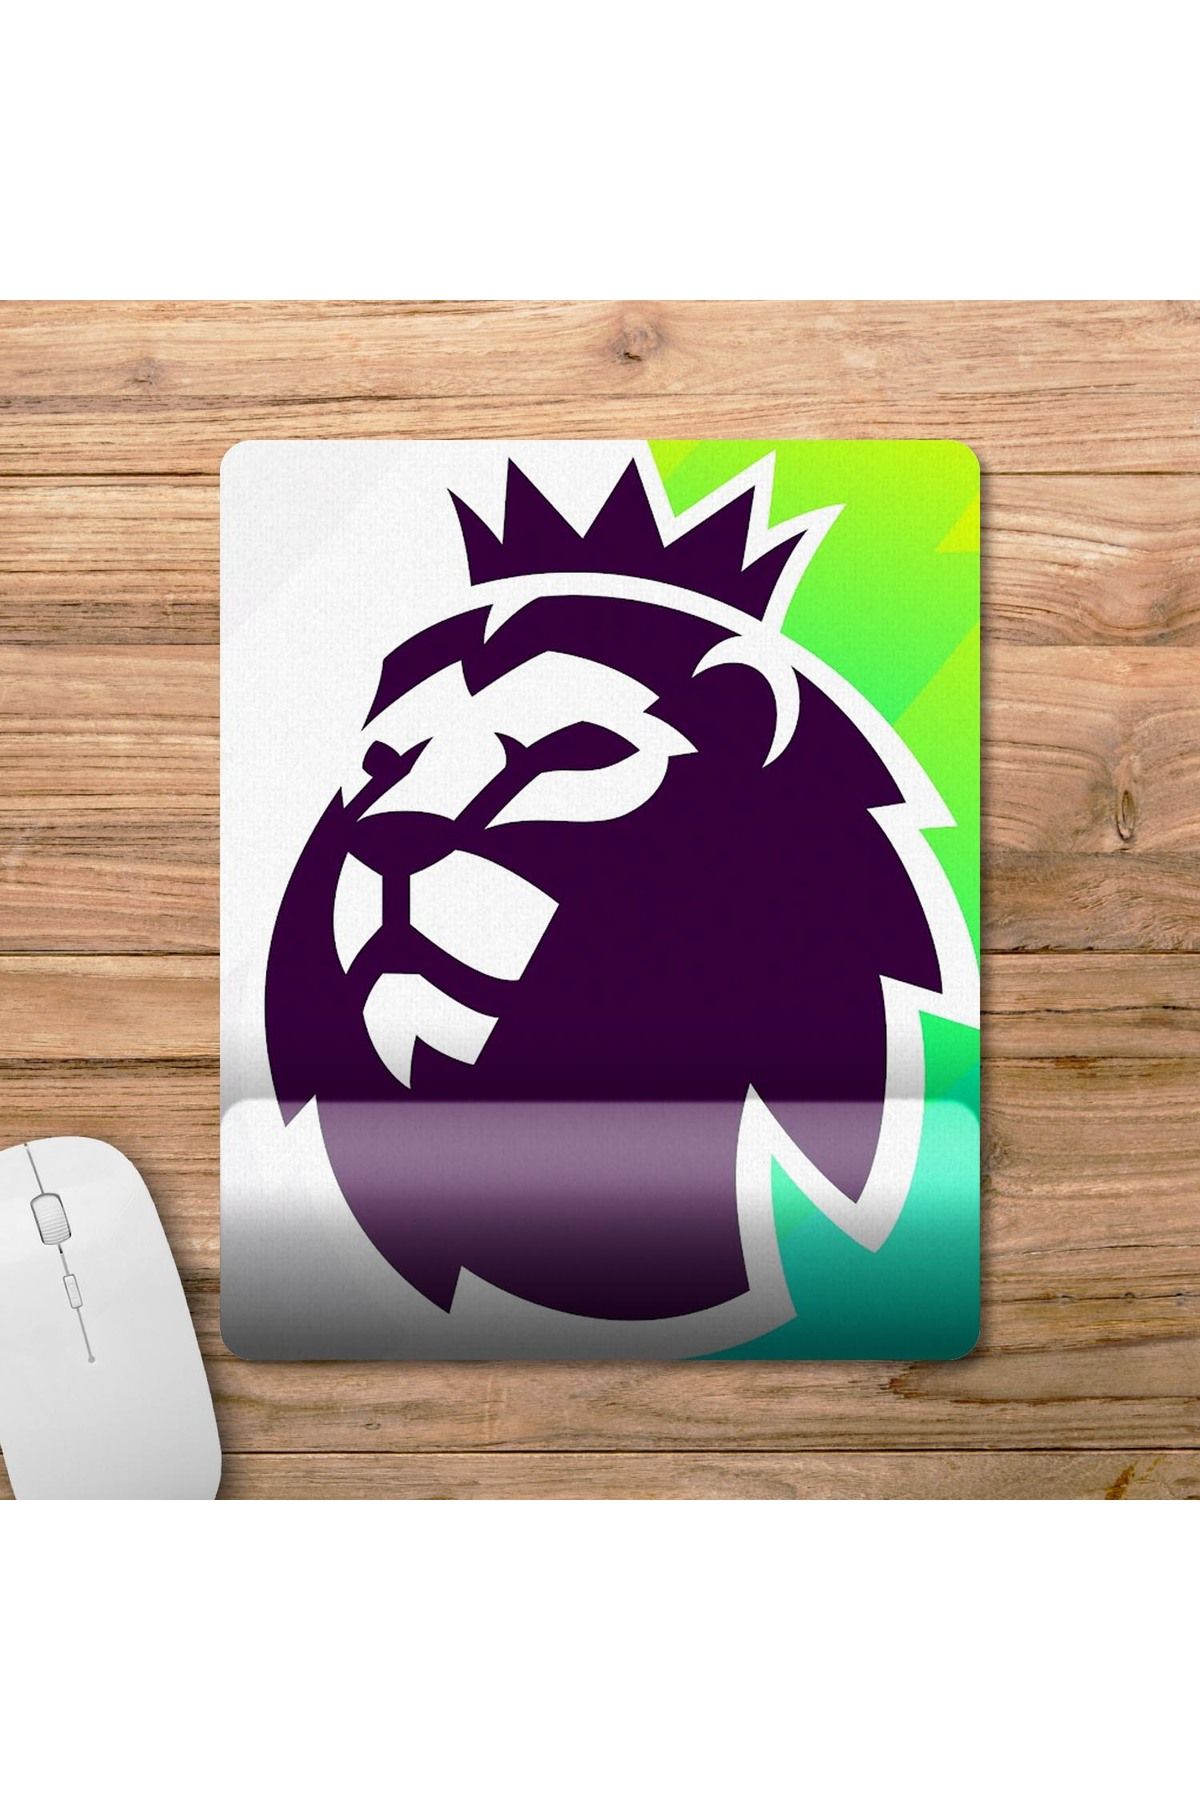 Pixxa Premier League - İngiltere Futbol Ligi Bilek Destekli Mousepad Model - 1